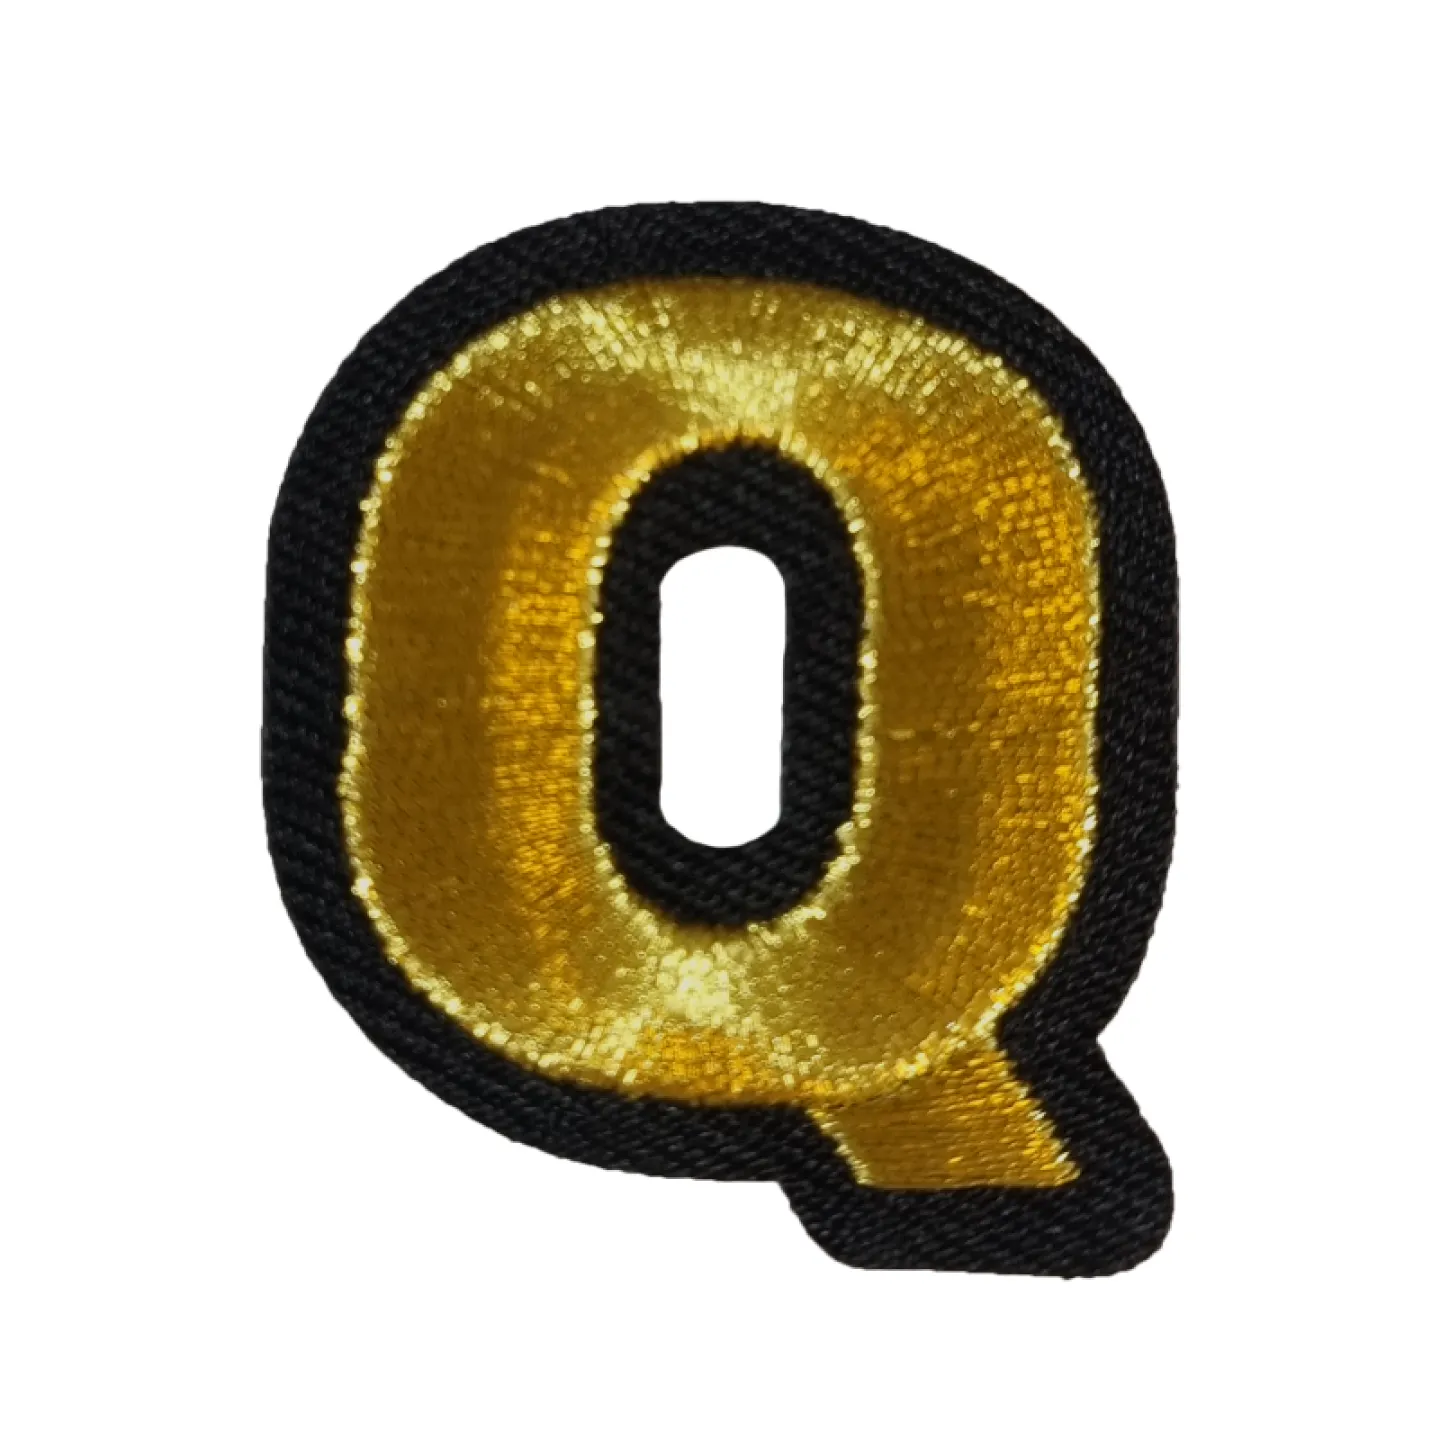 Oeteldonk embleem Gouden letter Q.